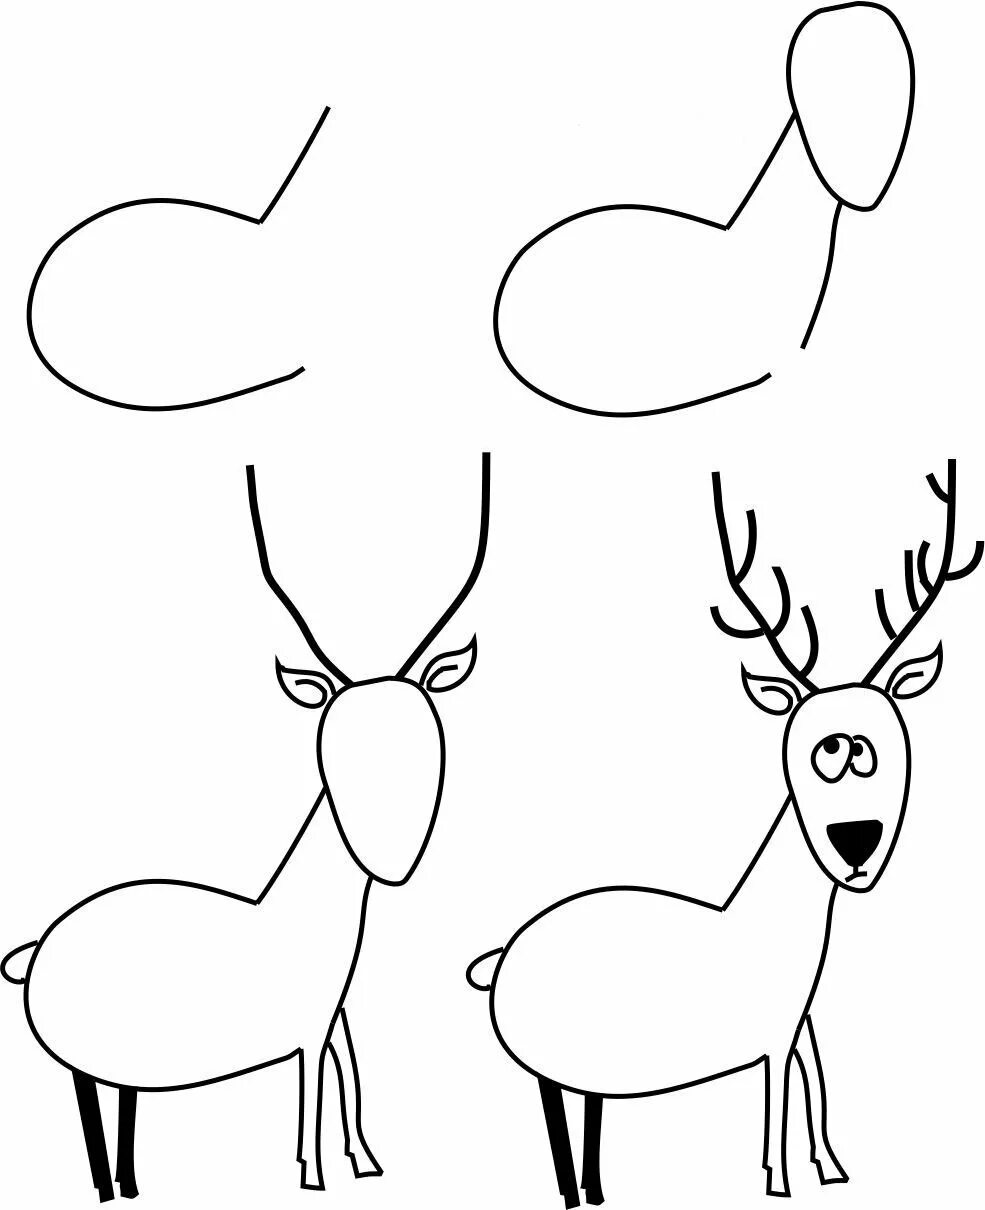 Нарисовать оленя легко для детей